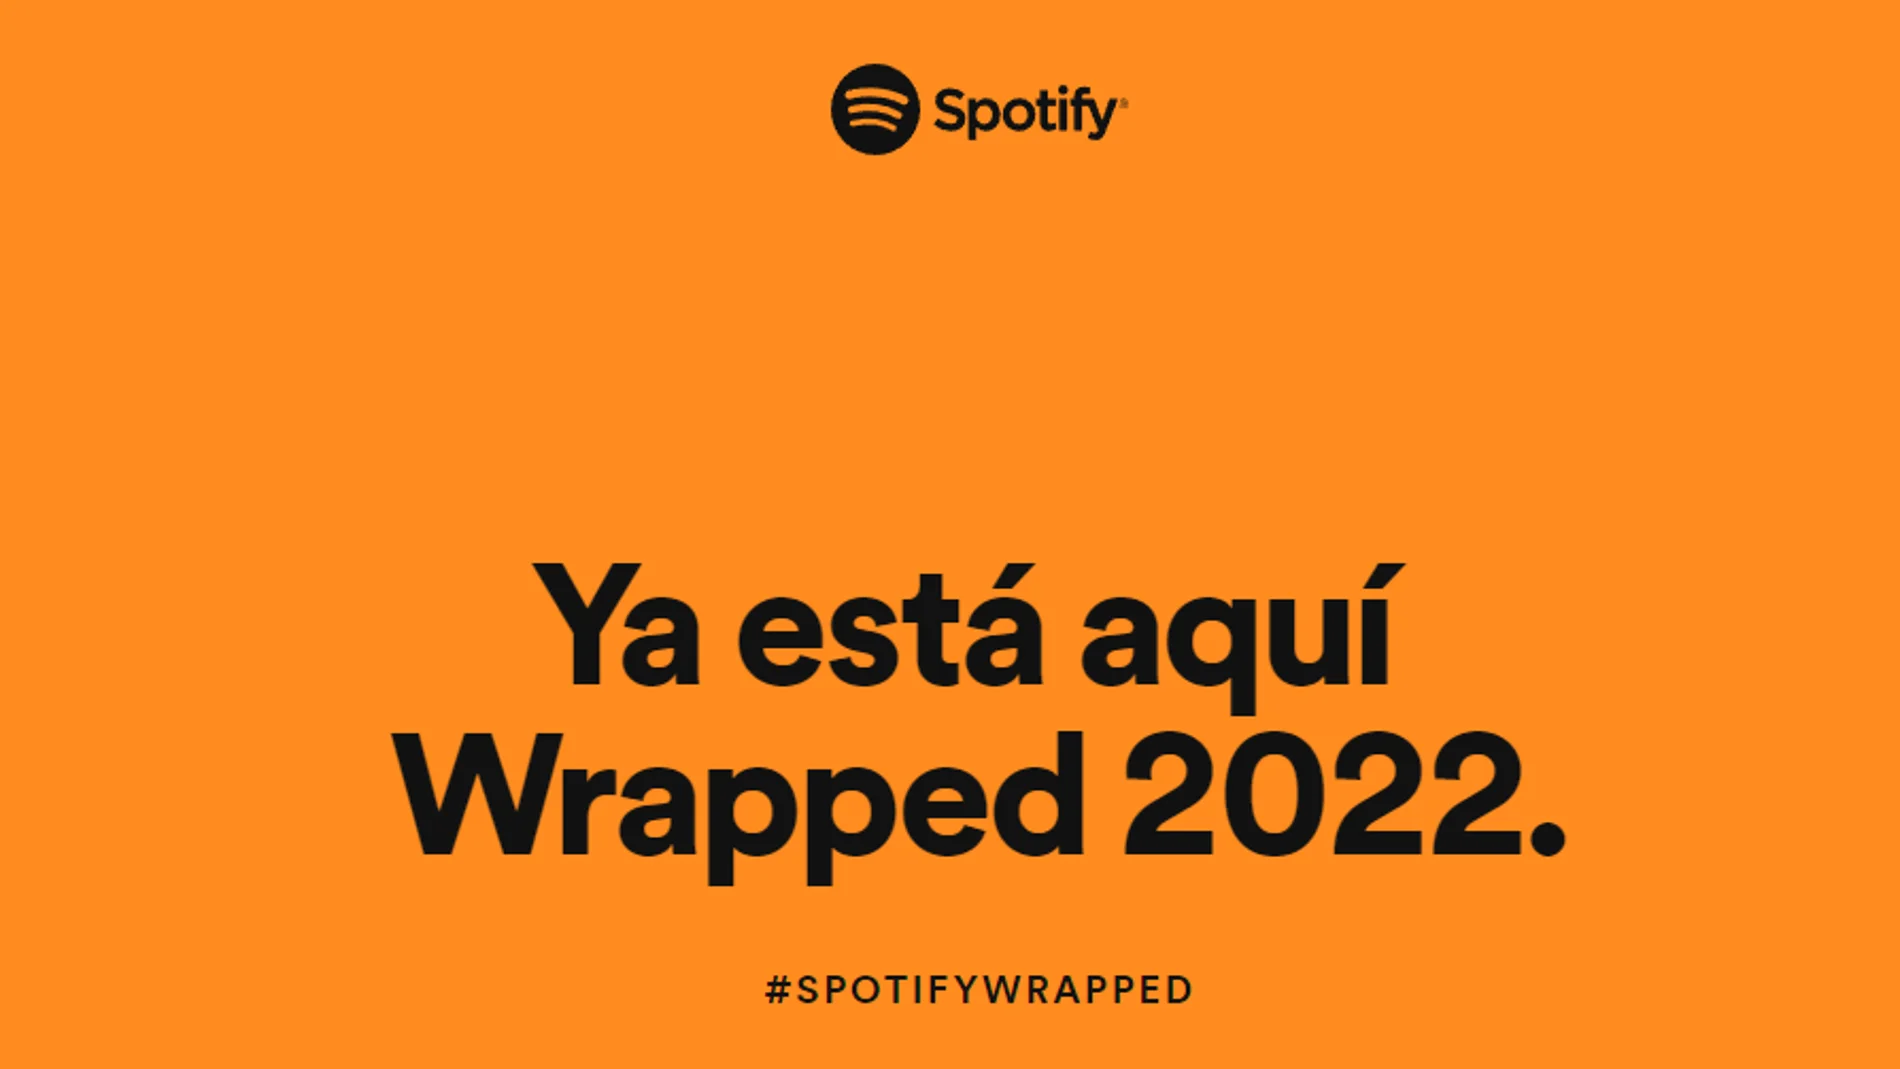 Spotify Wrapped 2022 ya ha llegado